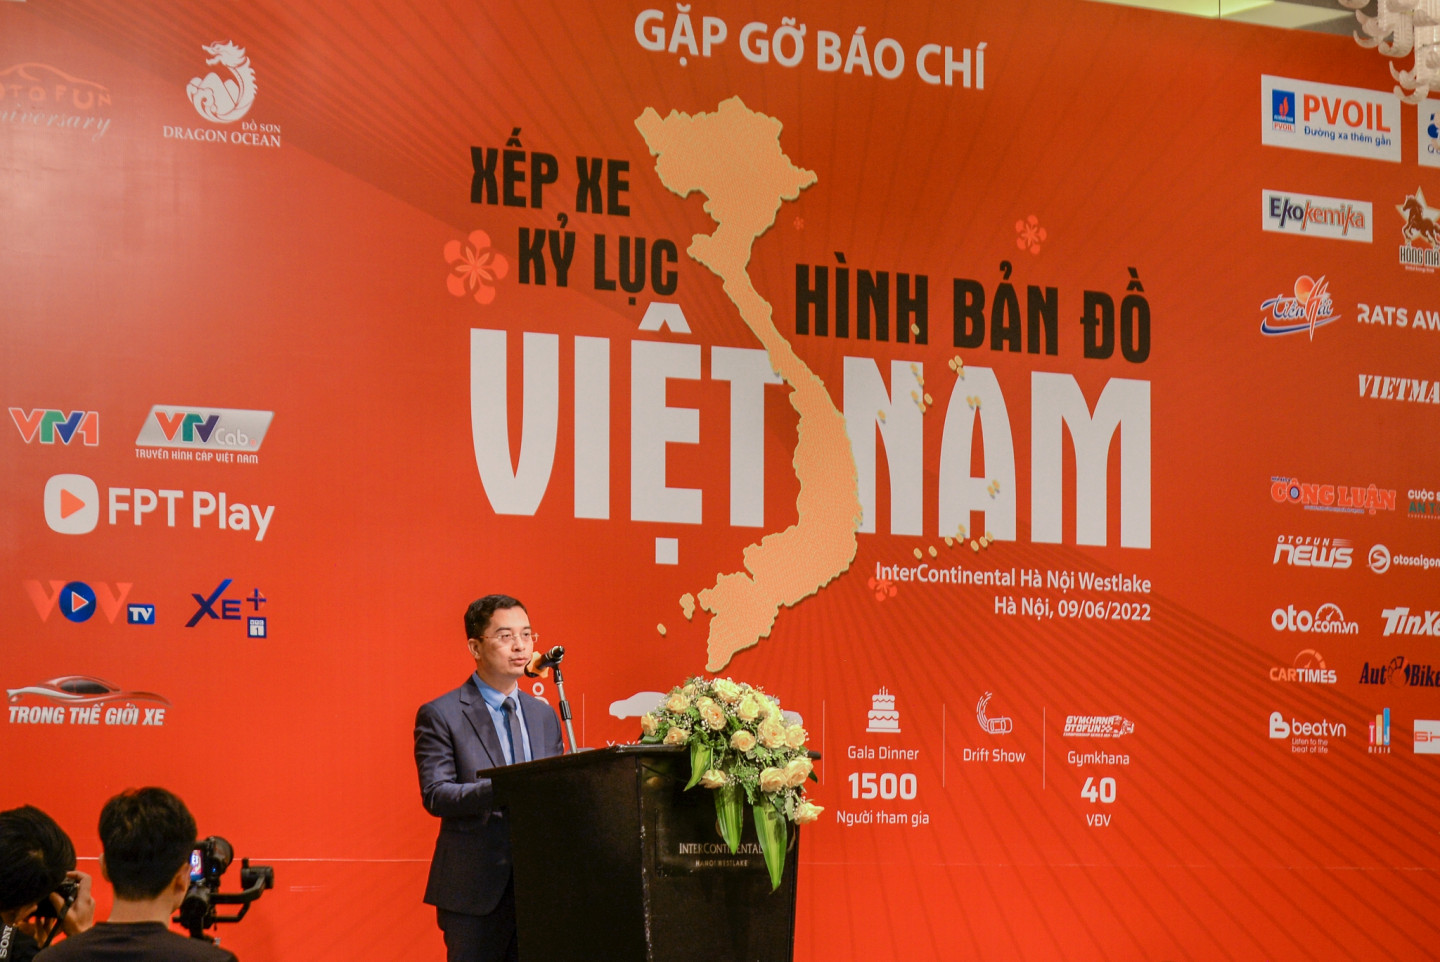 Xếp xe Kỷ lục Hình bản đồ Việt Nam.